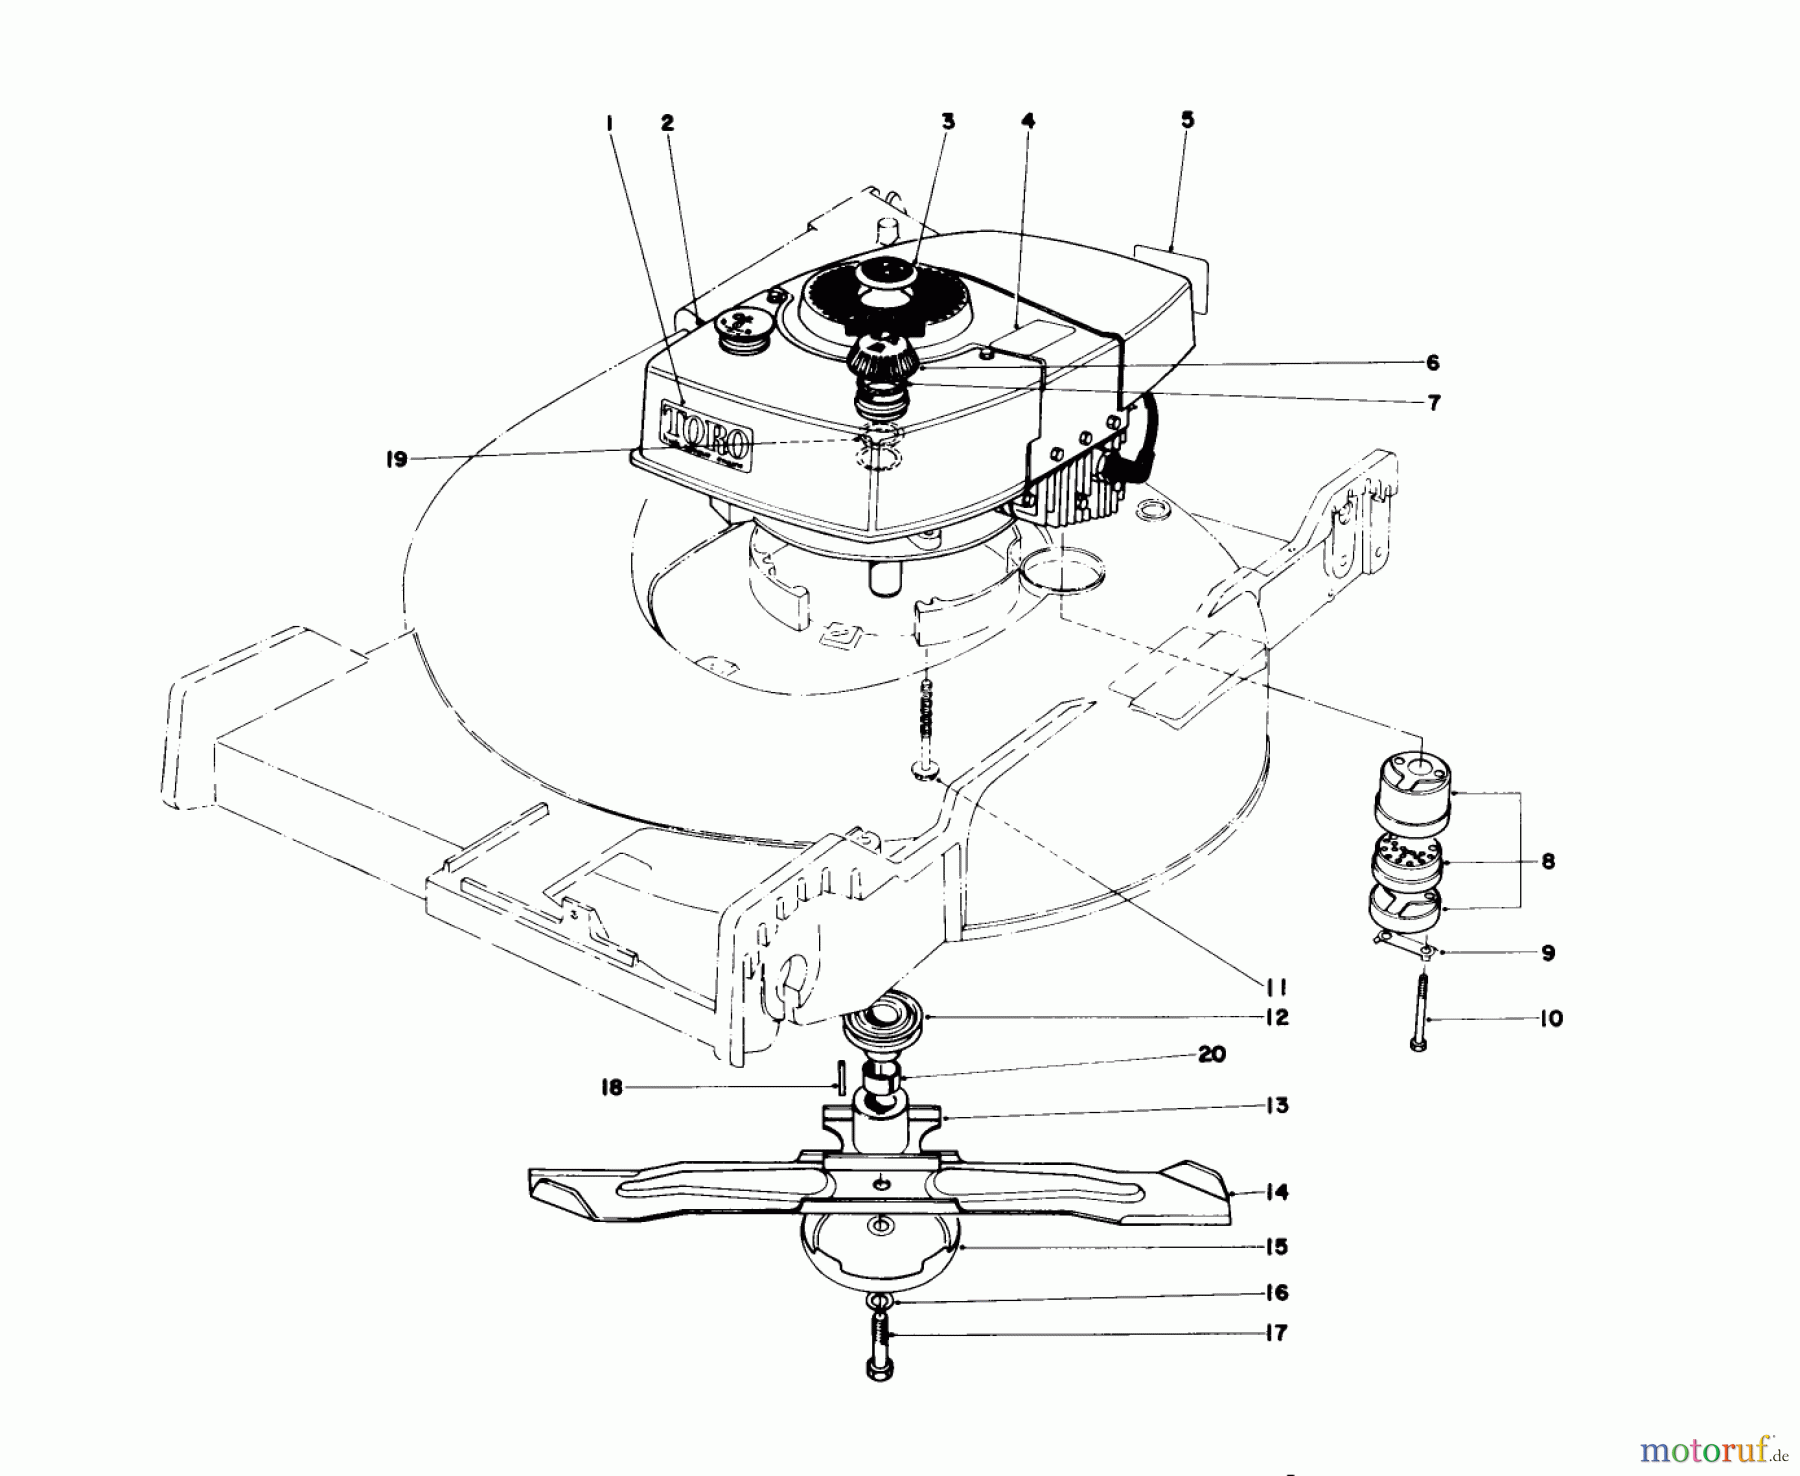  Toro Neu Mowers, Walk-Behind Seite 1 20644 - Toro Lawnmower, 1977 (7000001-7999999) ENGINE ASSEMBLY (MODEL NO. 20517)